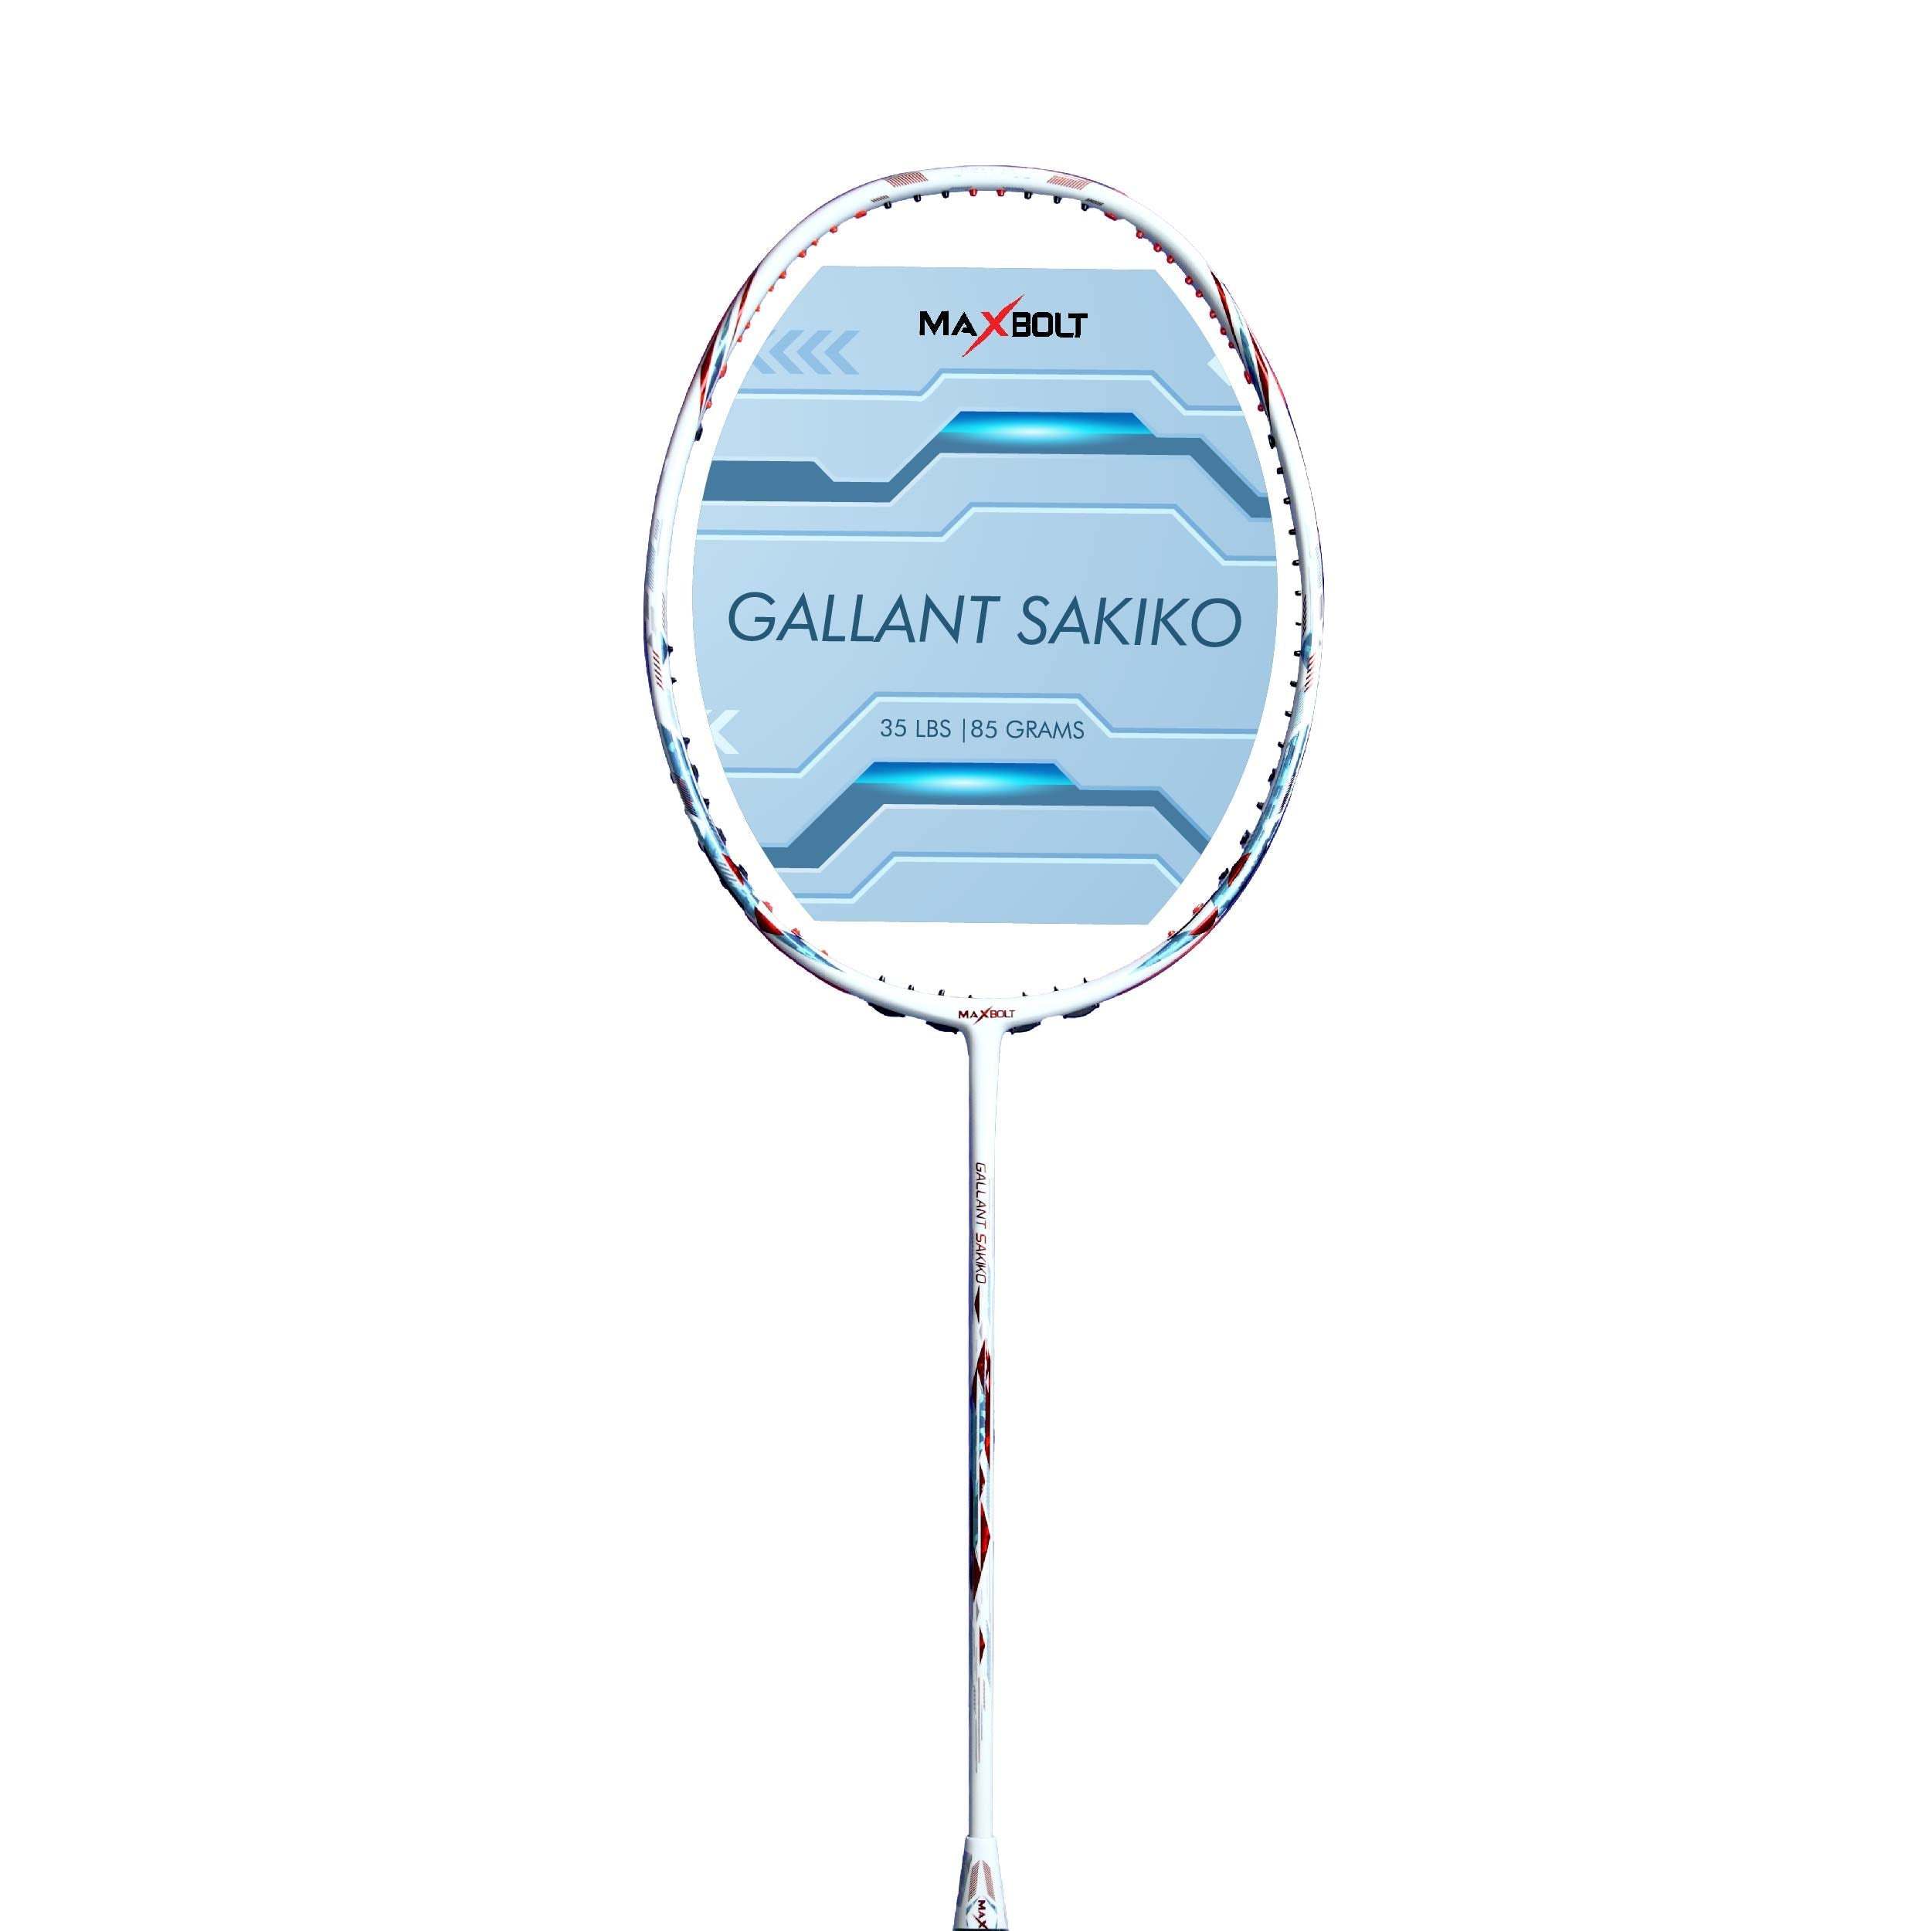 Maxbolt Gallant Sakiko Badminton Racket - White